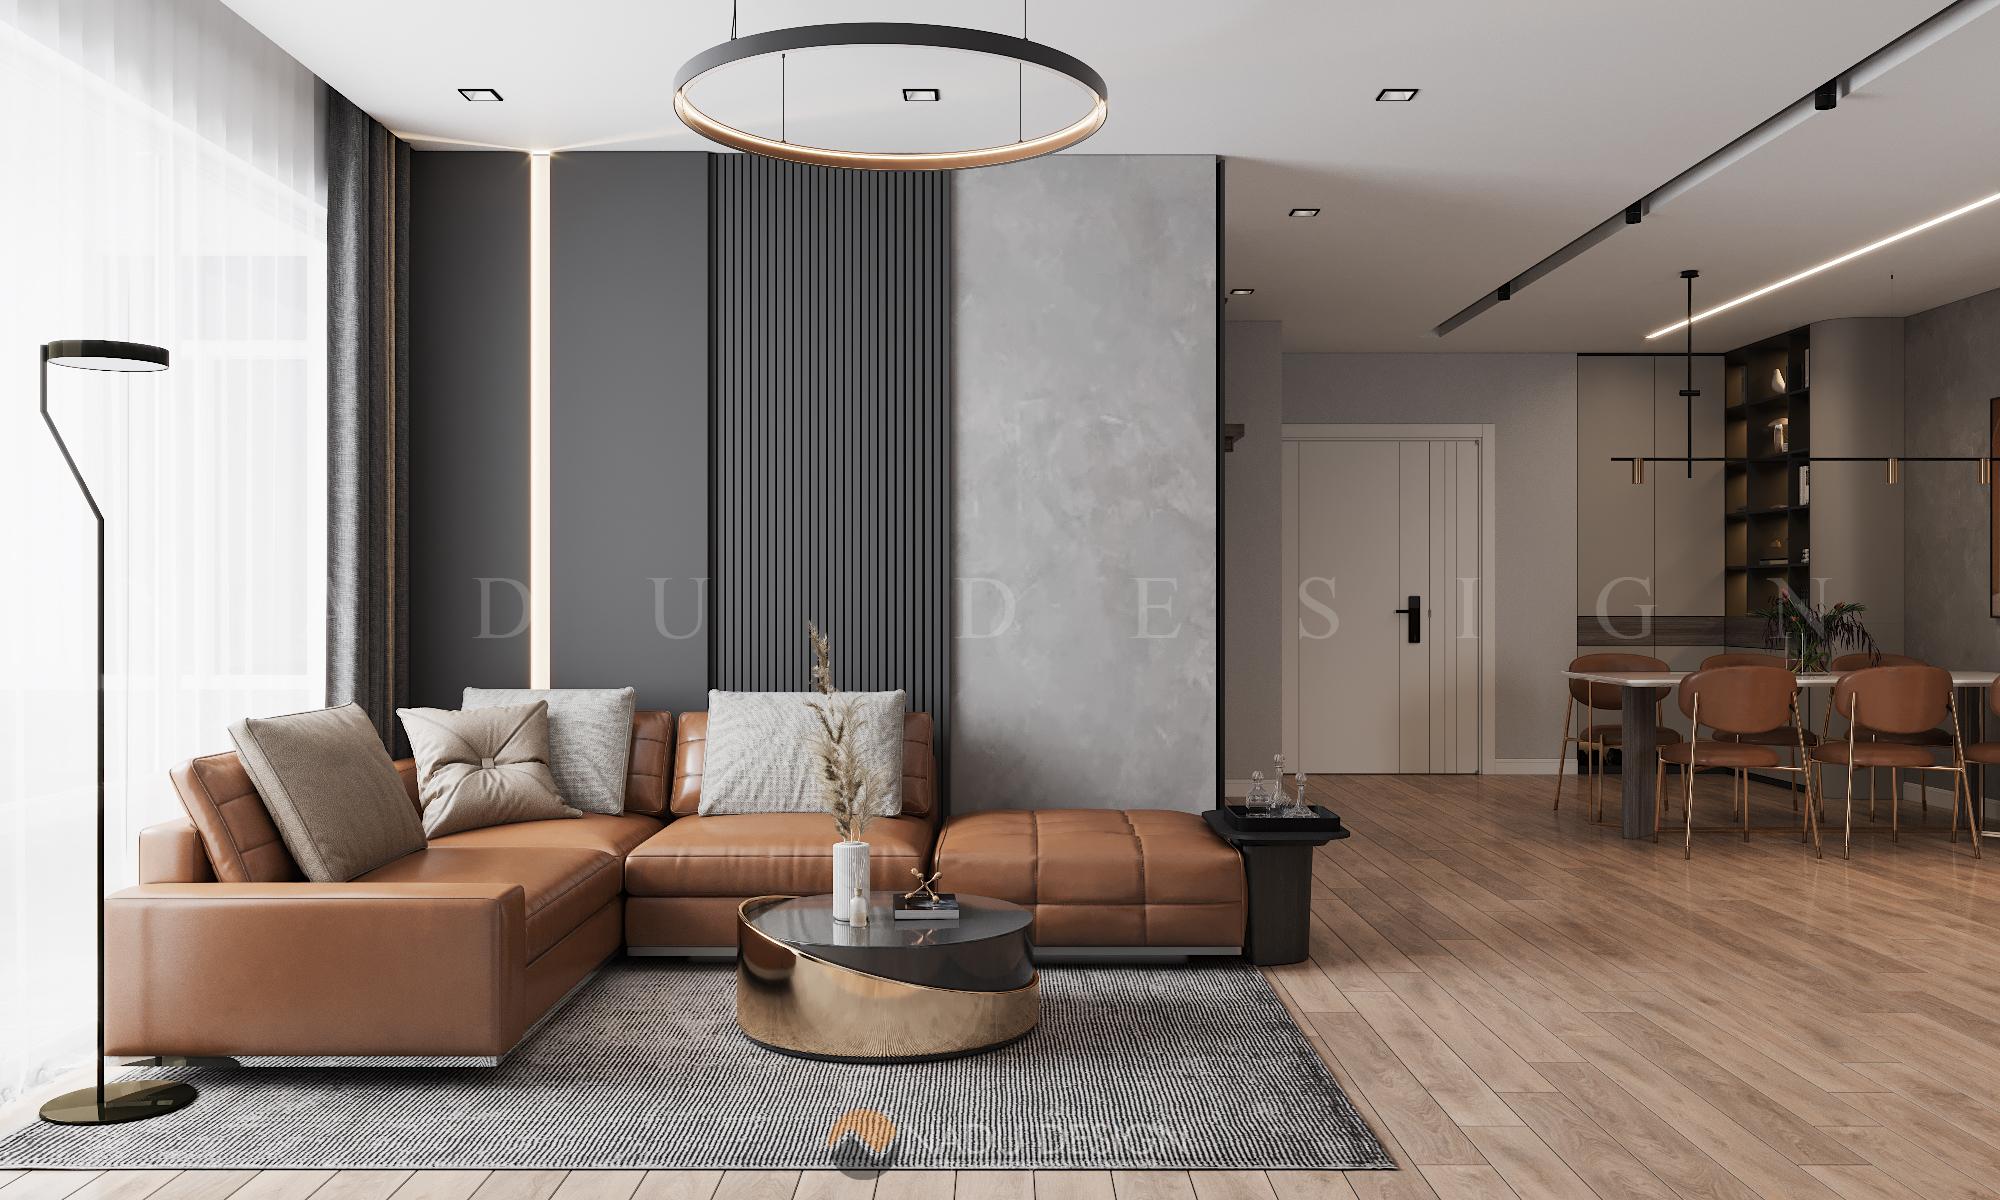 Thiết kế nội thất phòng khách chung cư đẹp miễn chê | DTI DESIGN - Công ty  thiết kế nội thất uy tín tại HN và TpHCM